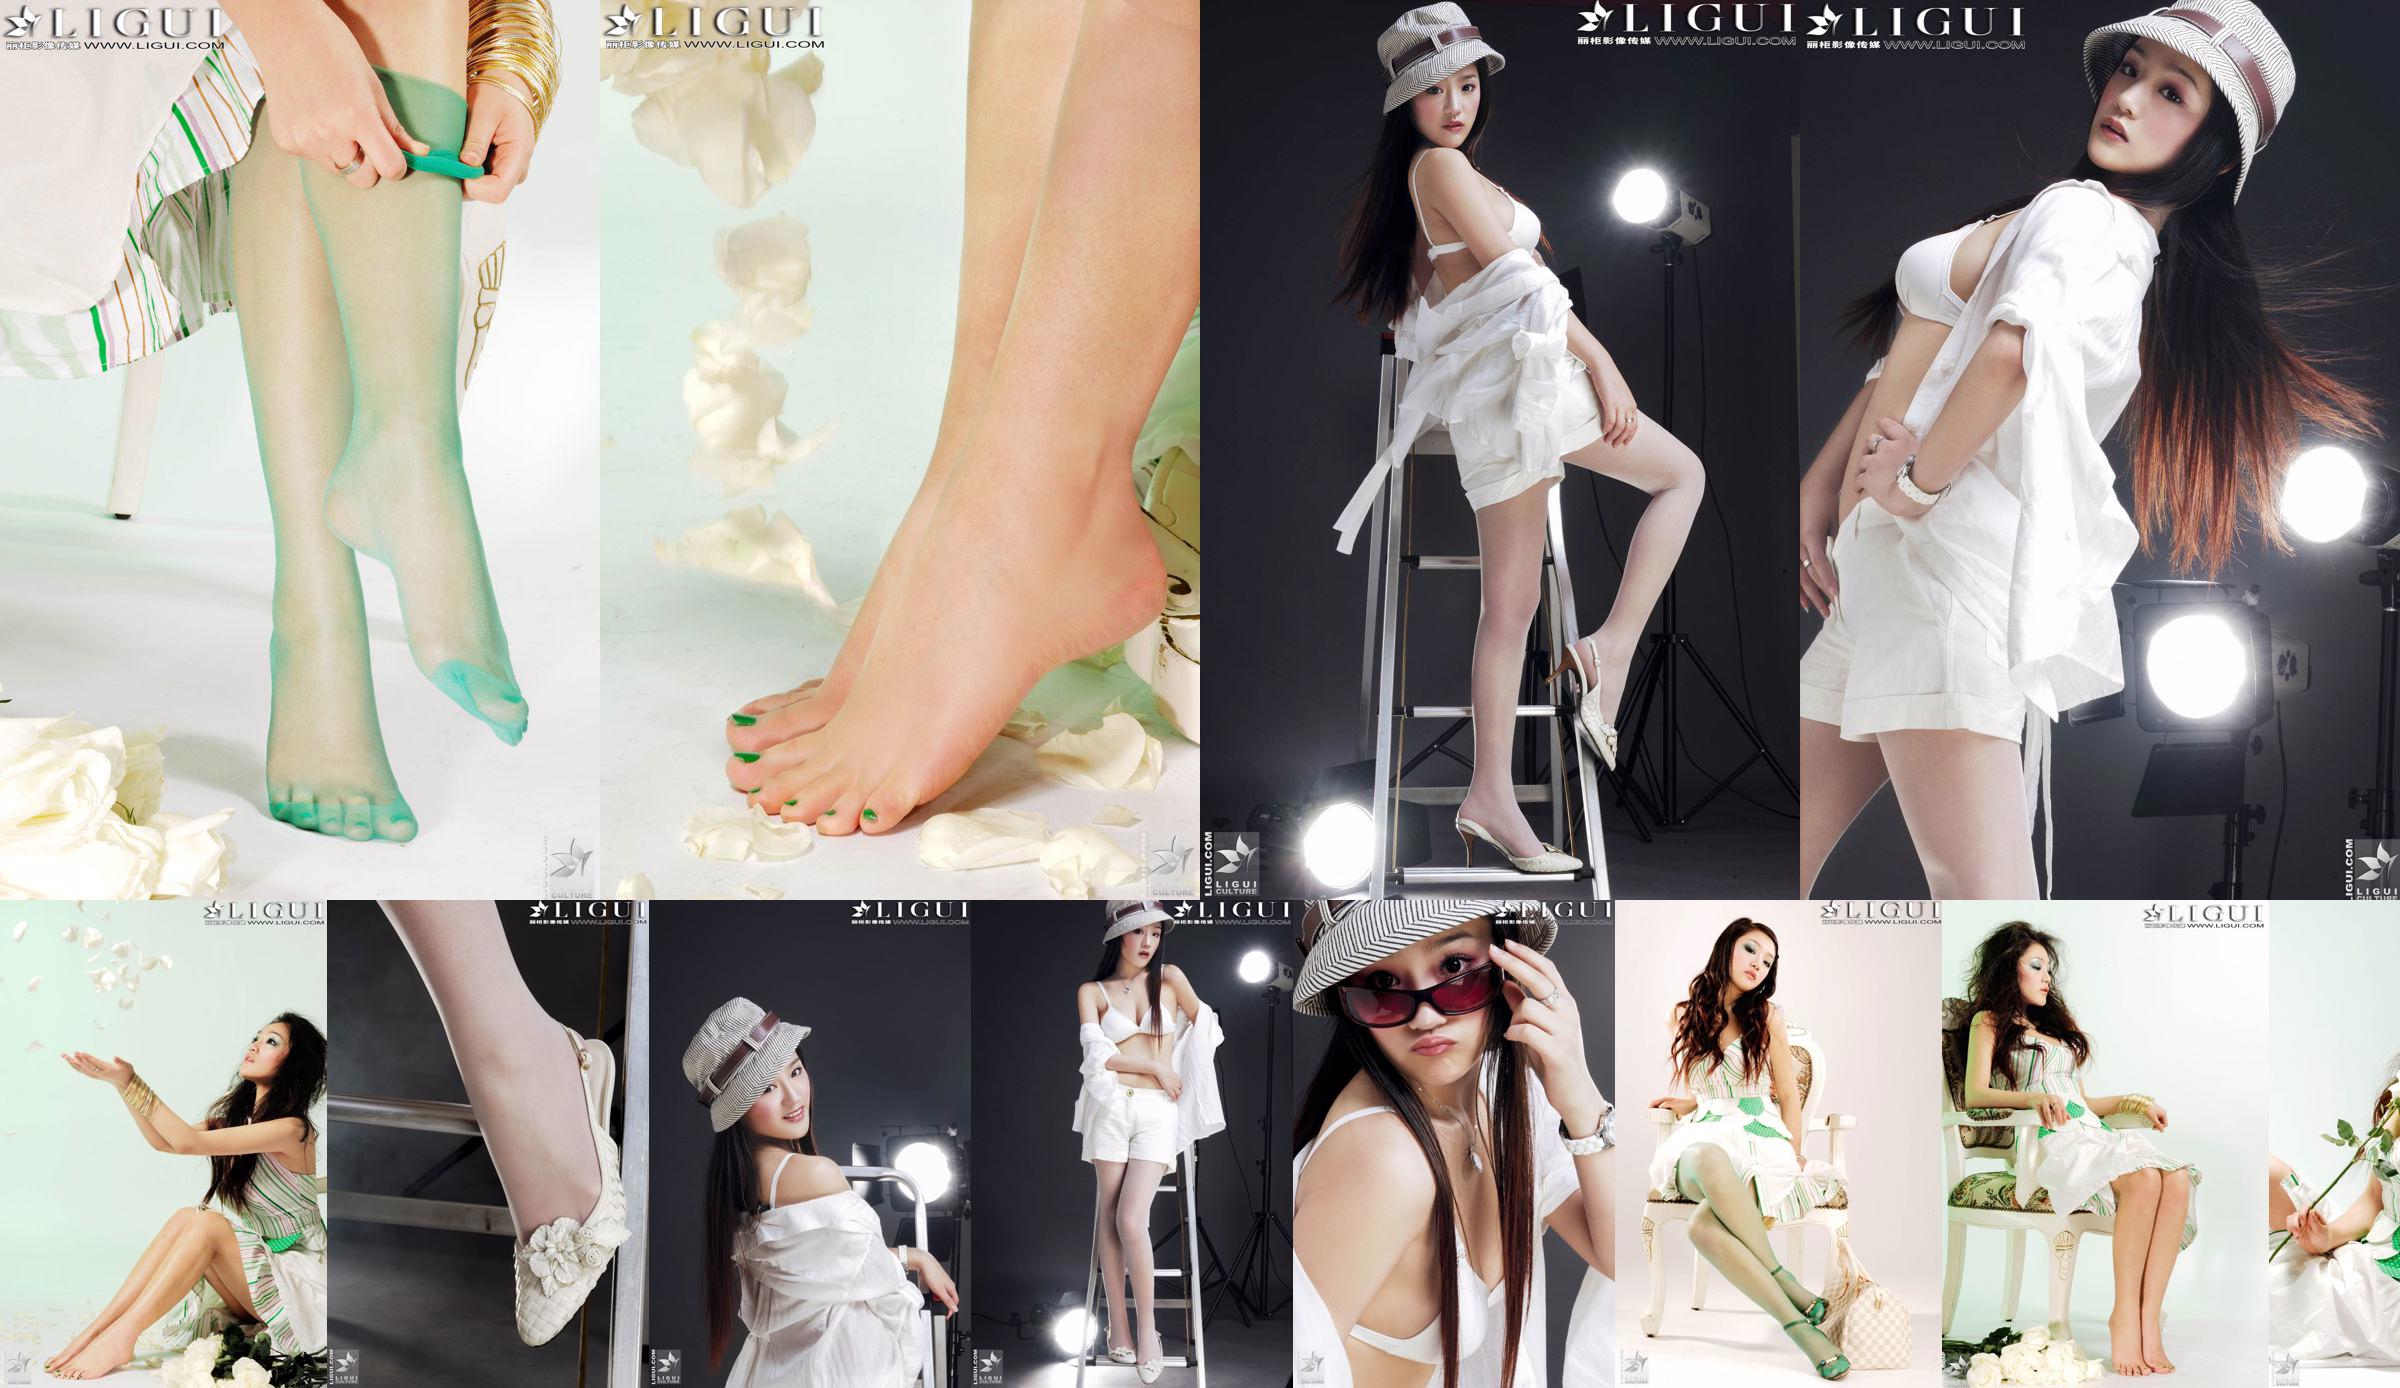 [丽 柜 贵 foot LiGui] Foto "Fashionable Foot" milik Model Zhang Jingyan tentang kaki dan kaki sutra yang indah No.fa6ad9 Halaman 3